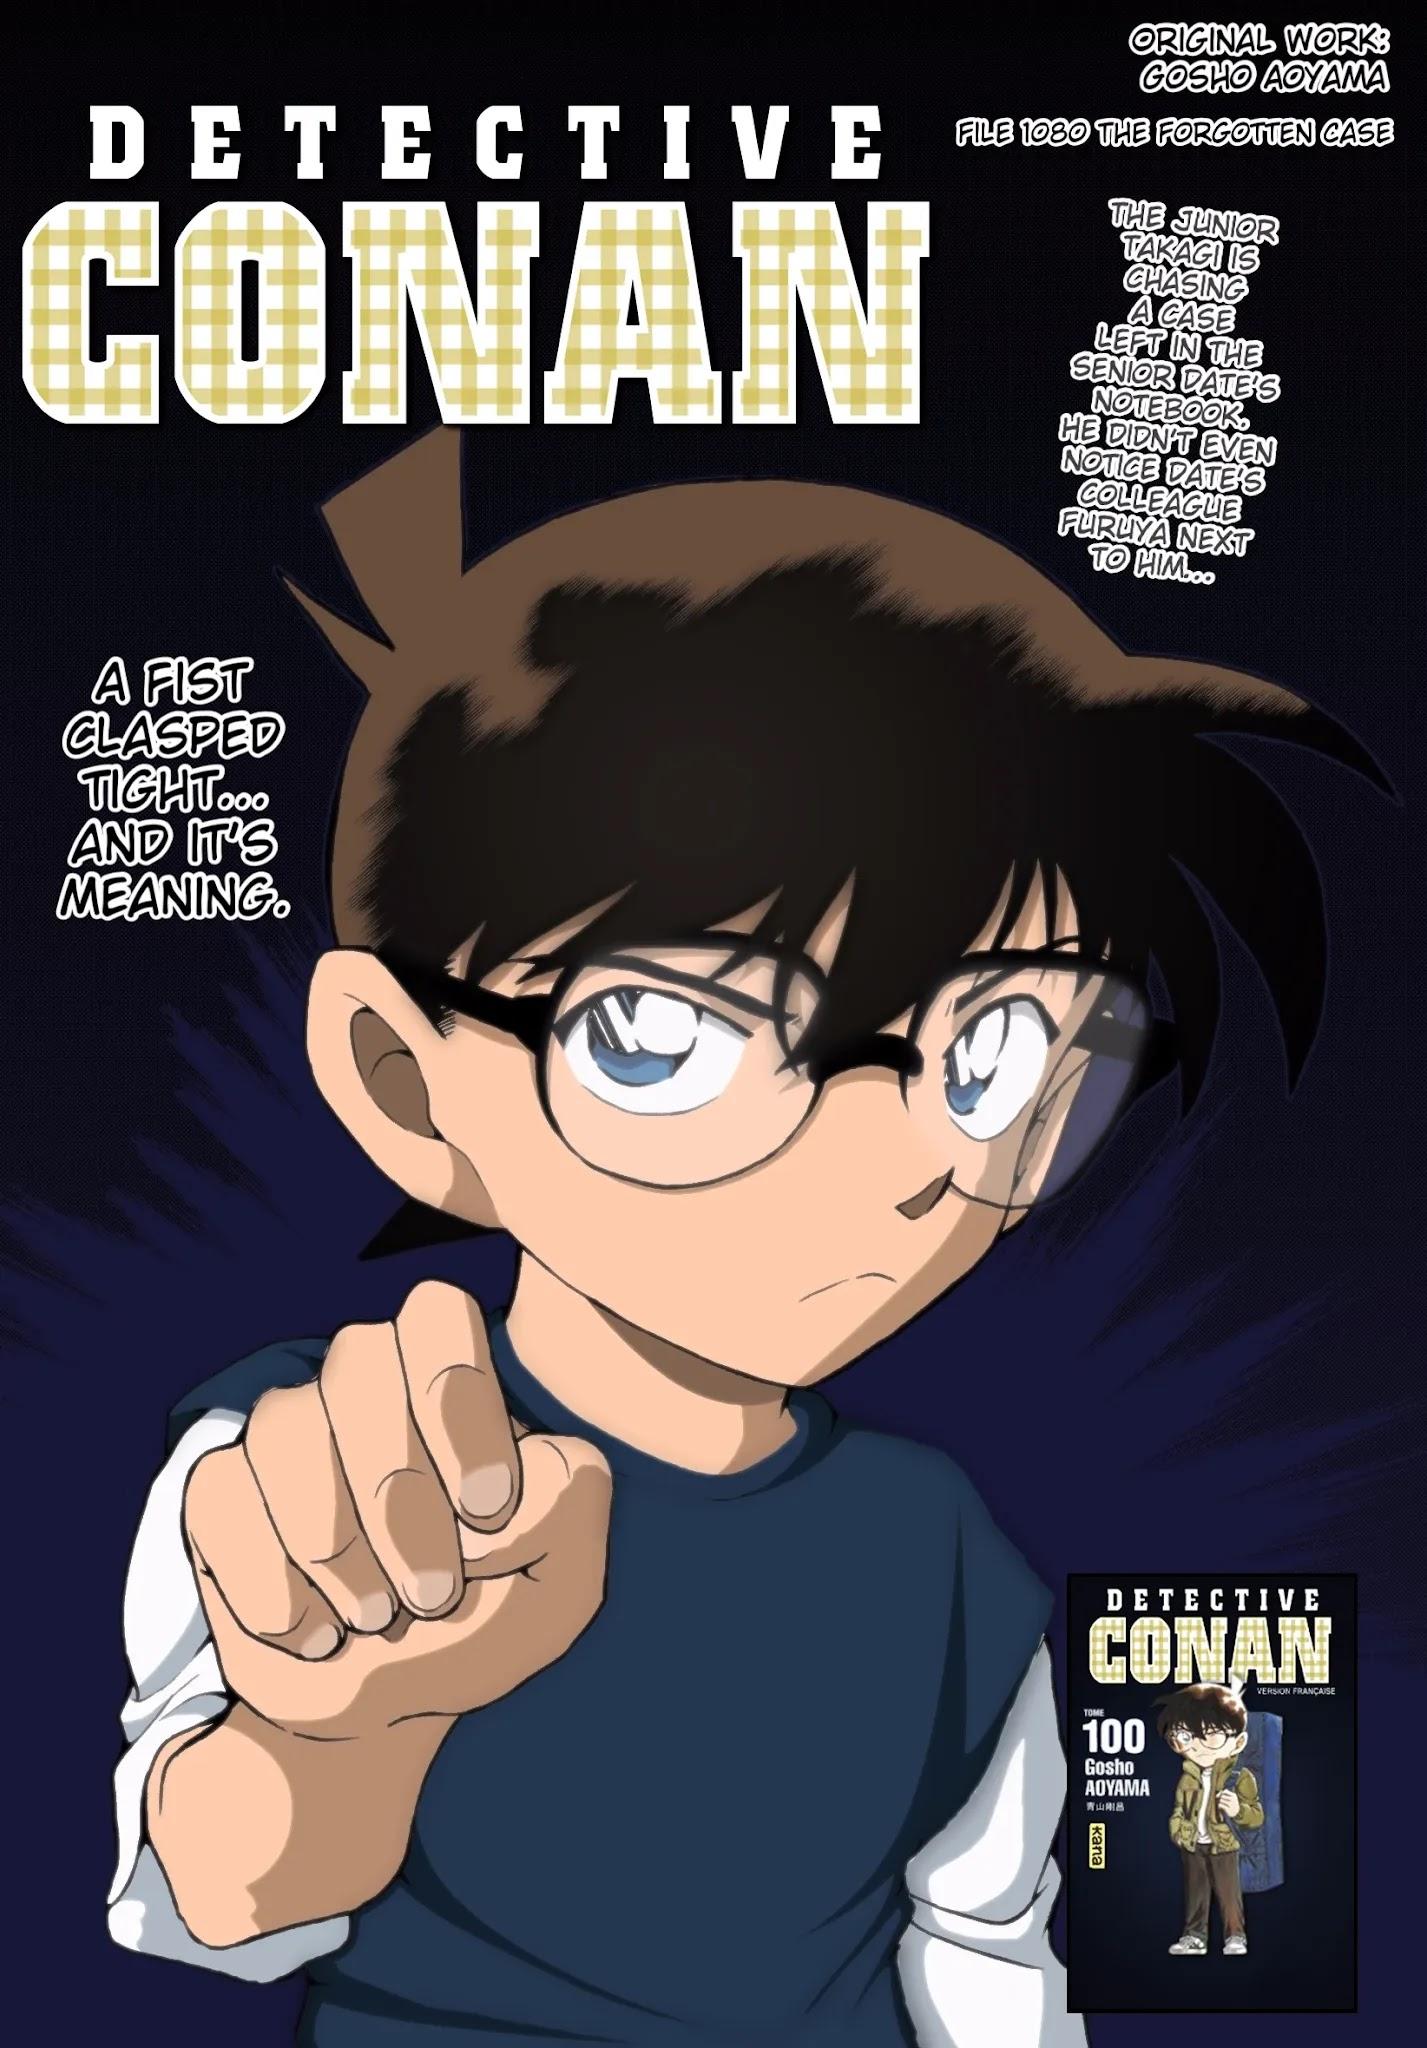 Detective Conan - episode 1080 - 0